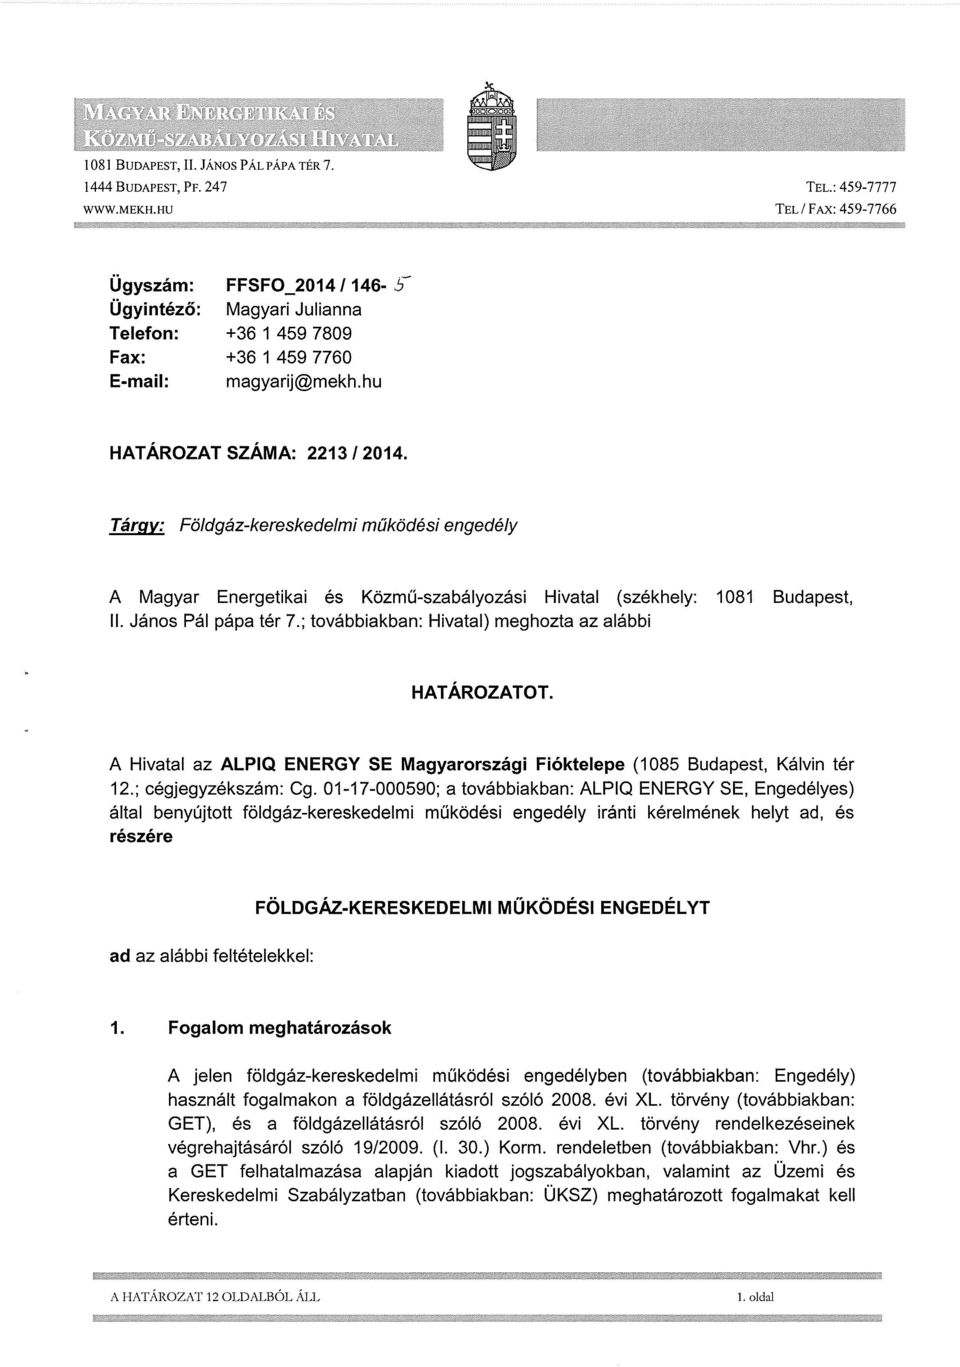 Tárgy: Földgáz-kereskedelmi működési engedély A Magyar Energetikai és Közmű-szabályozási Hivatal (székhely: 1081 Budapest, II. János Pál pápa tér 7.